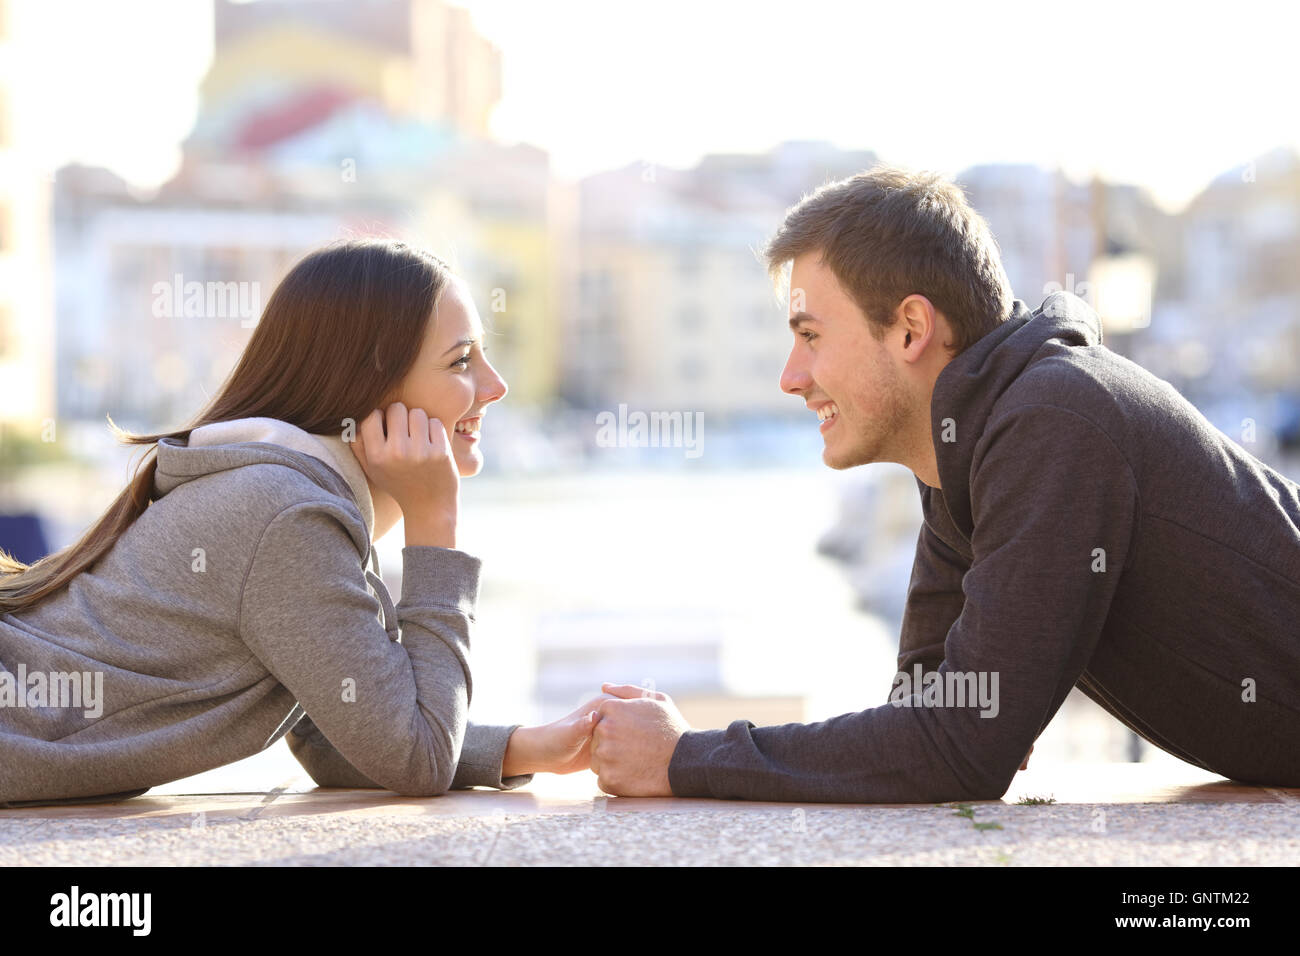 Vista lateral de una pareja de adolescentes dating y el coqueteo enamoramiento buscando mutuamente tumbado en el suelo en un puerto Foto de stock